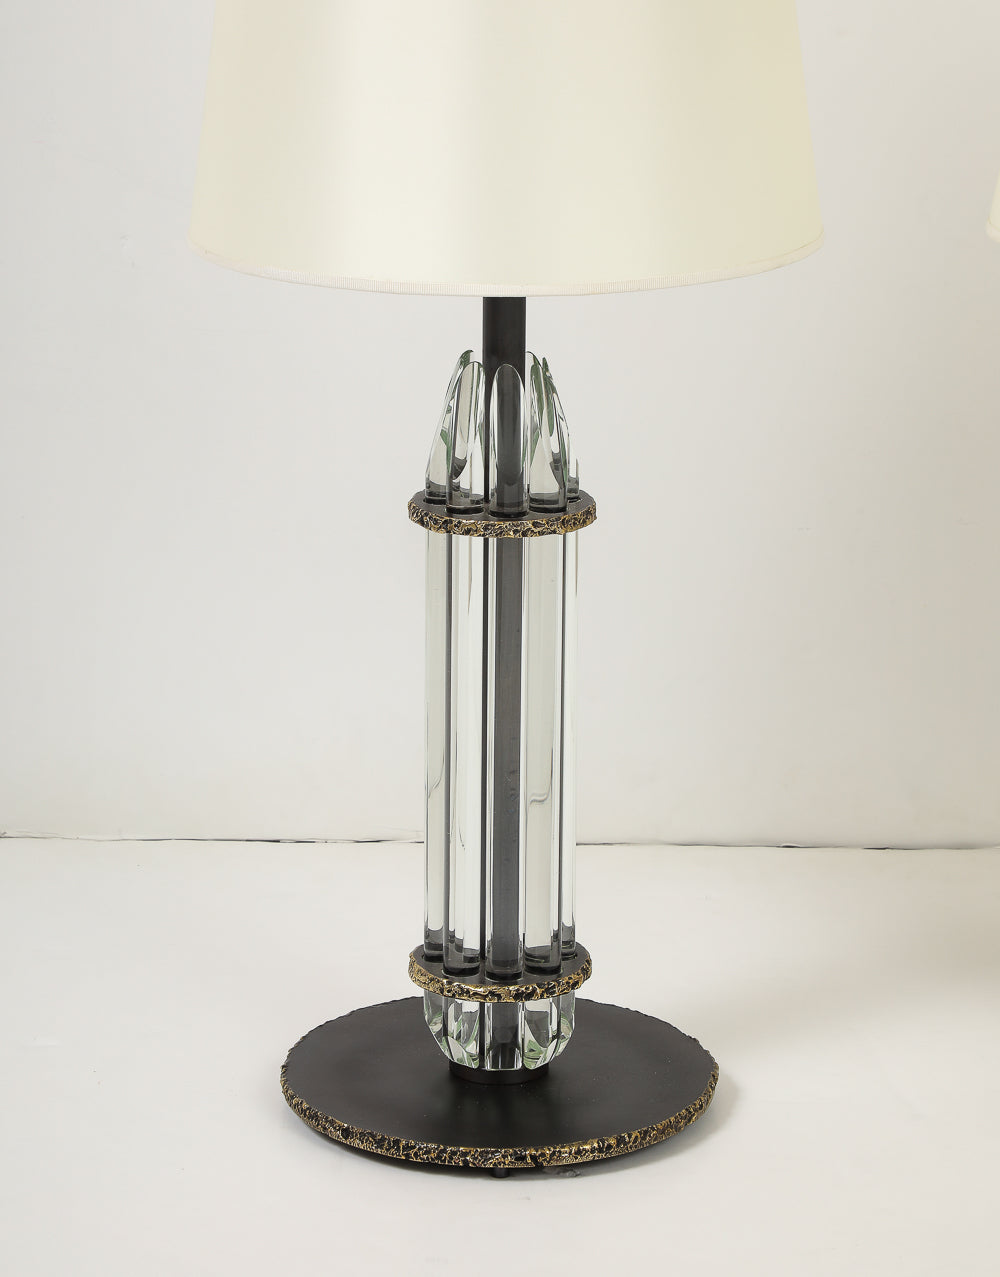 Mini Vlad Table Lamps by Roberto Giulio Rida